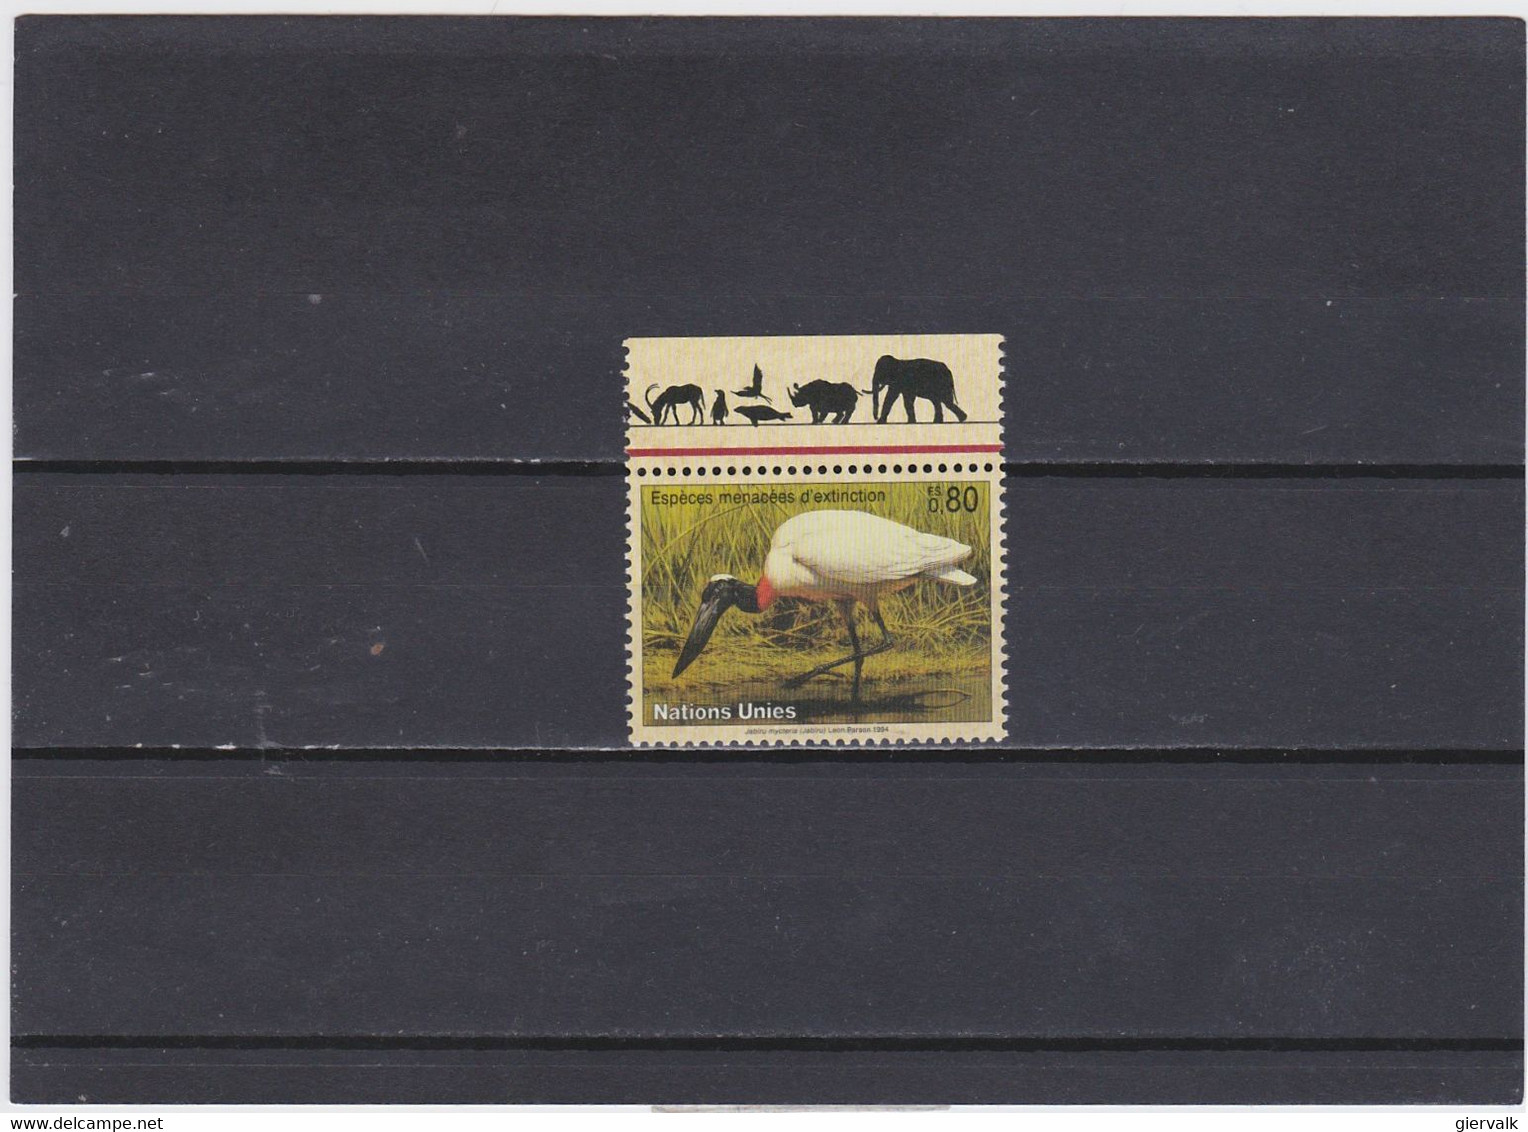 UNITED NATIONS(GENEVE) 1994 JABIRU.MNH. - Storks & Long-legged Wading Birds